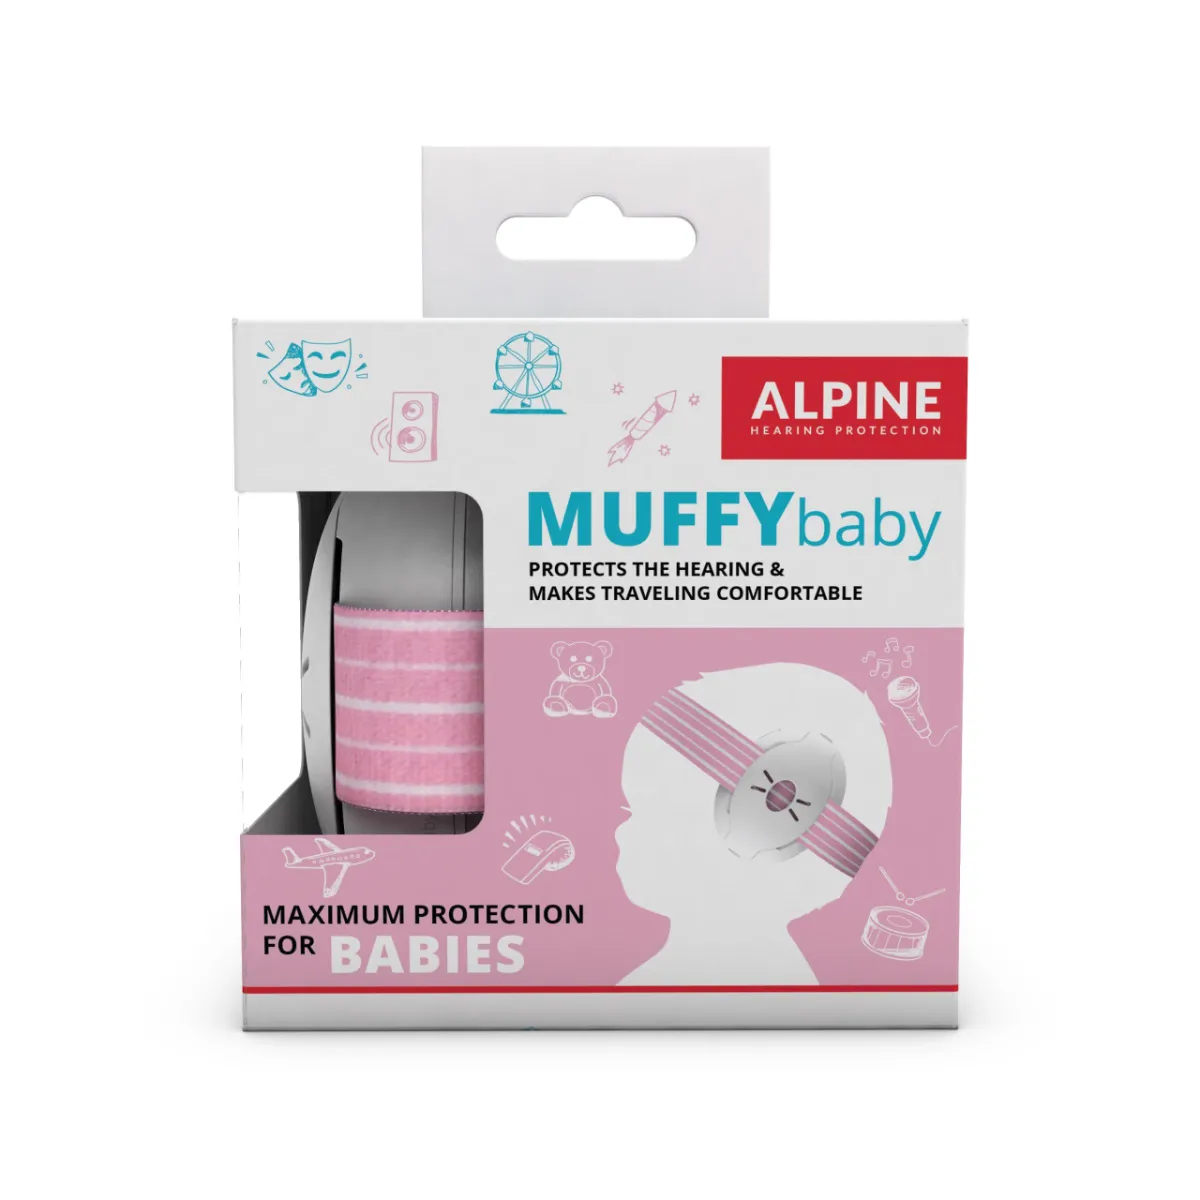 Casti antifonice pentru bebelusi de la 0-3 ani Muffy Baby Pink ALP24951, 1 bucata, Alpine